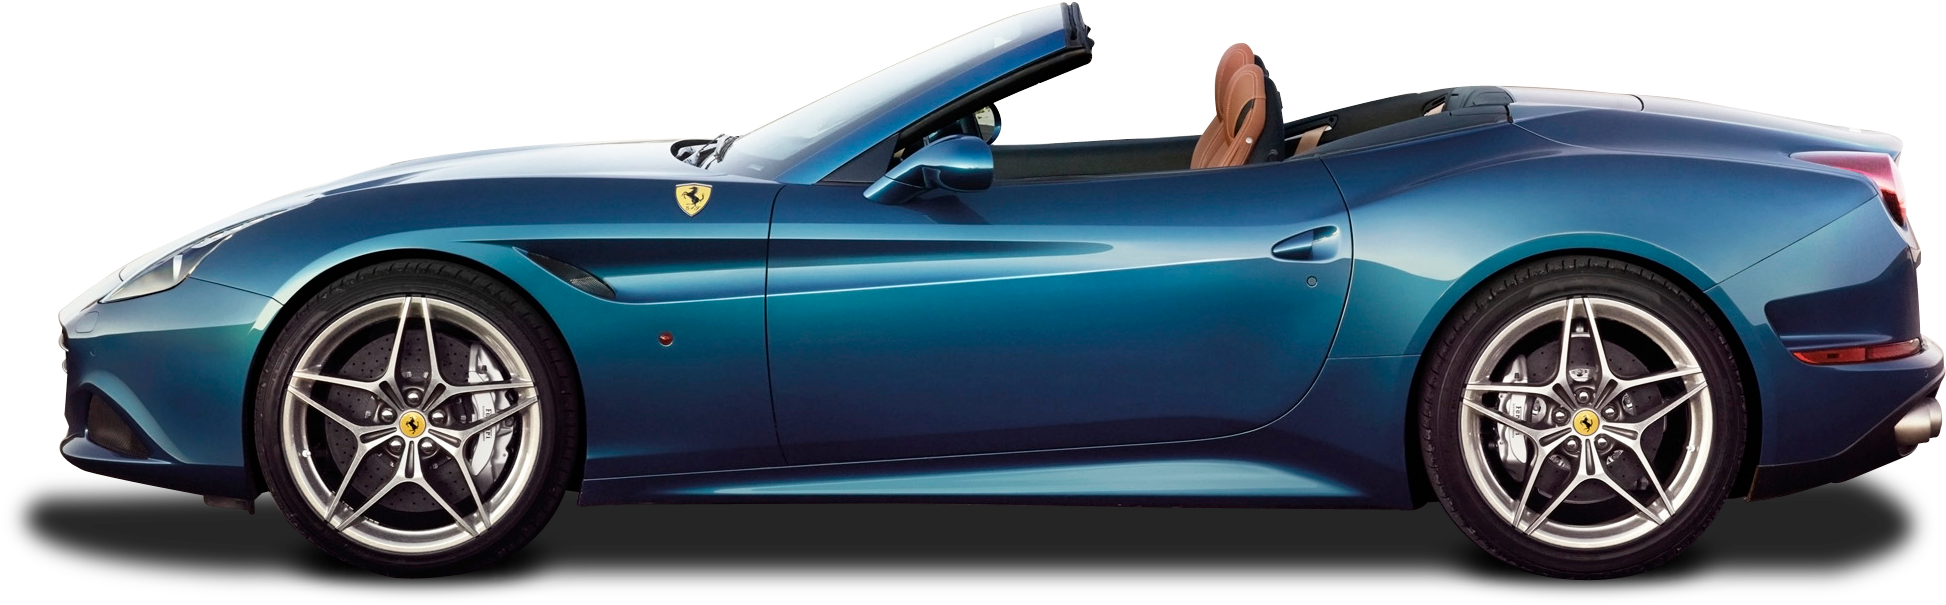 Ferrari-Portofino-PNG-Bildhintergrund